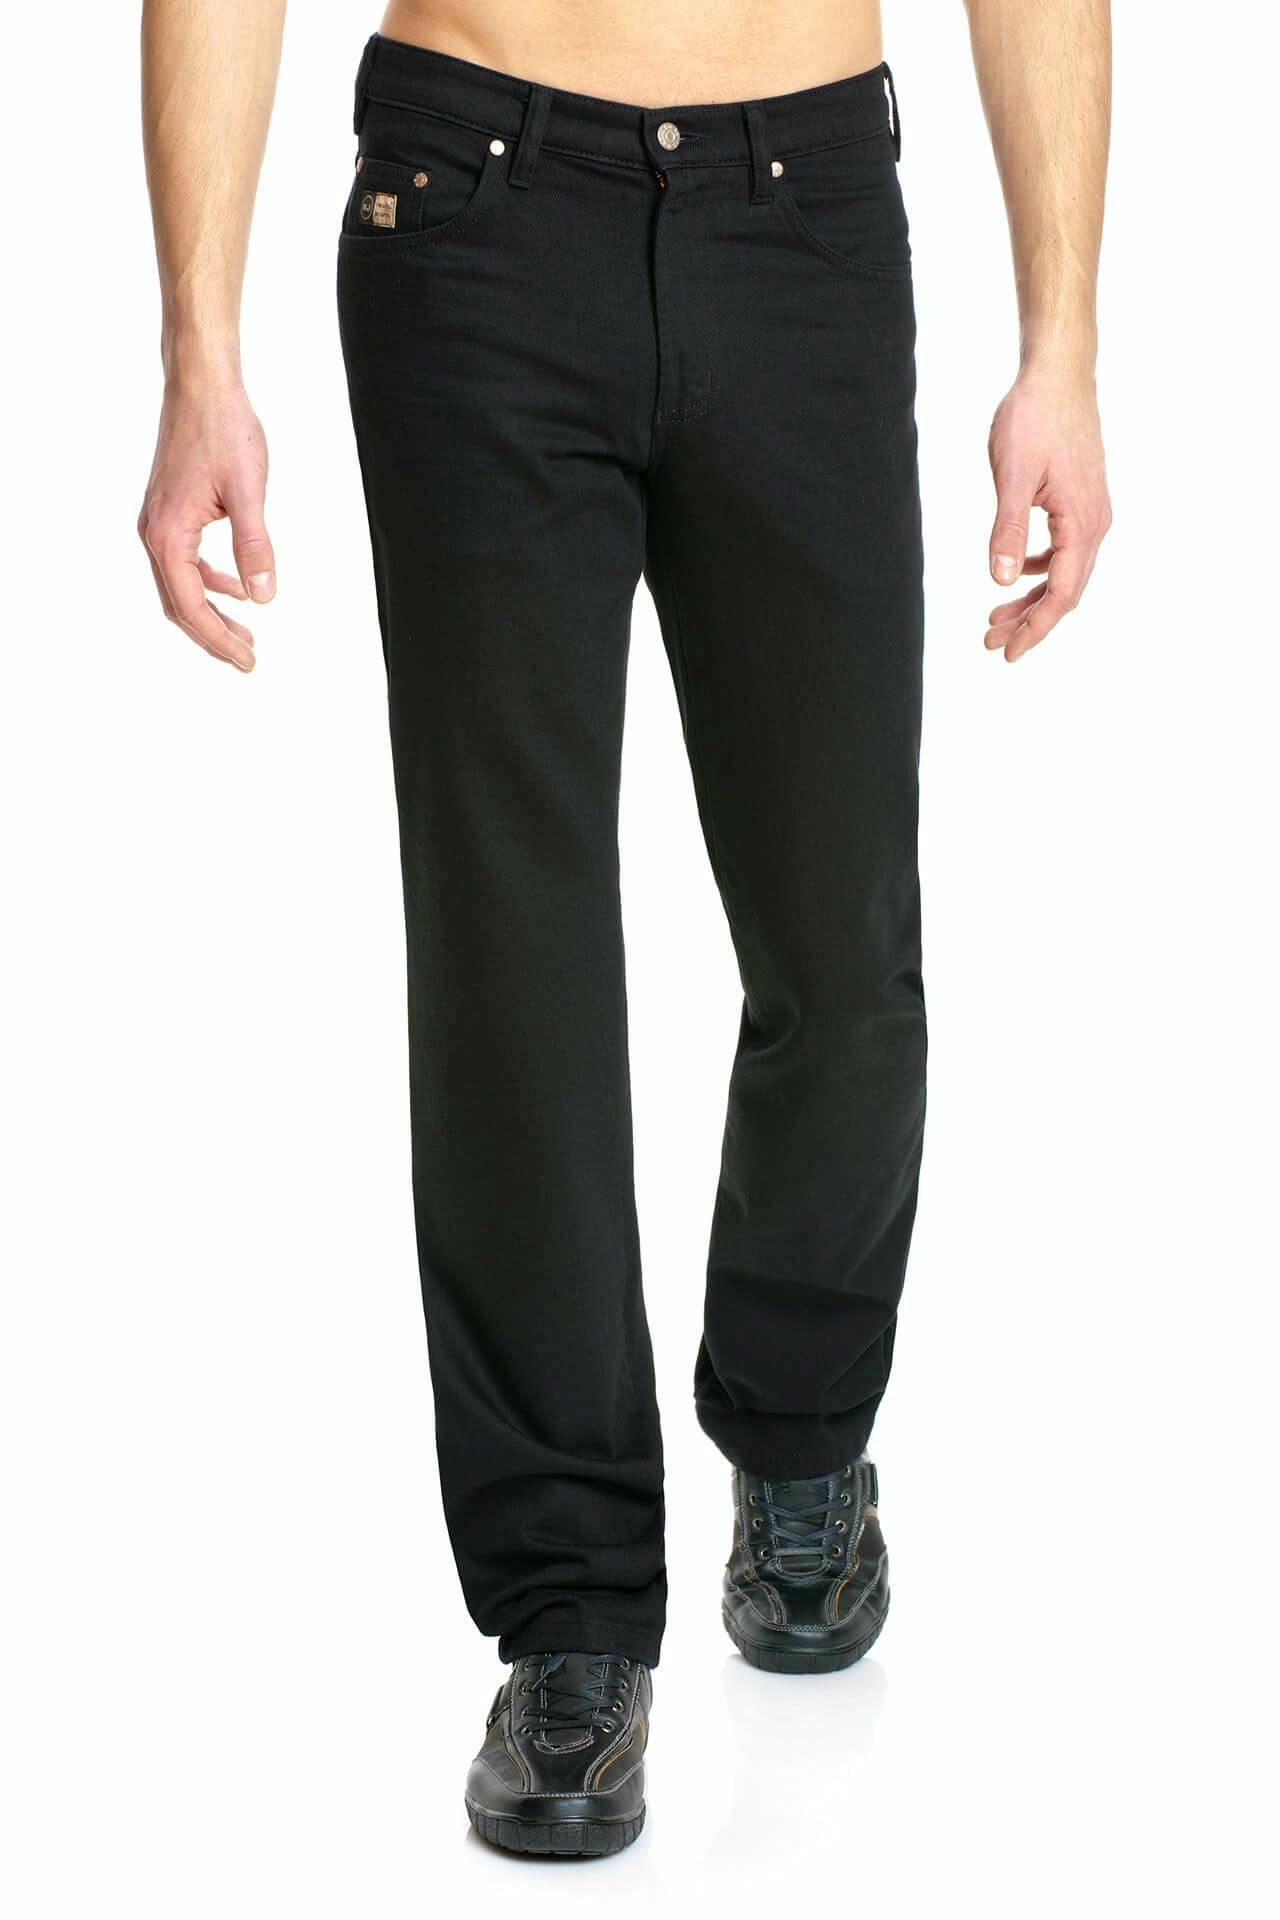 Revils Jeans 302 v1703 stretch noir de w30 à w35 Hommes Jeans